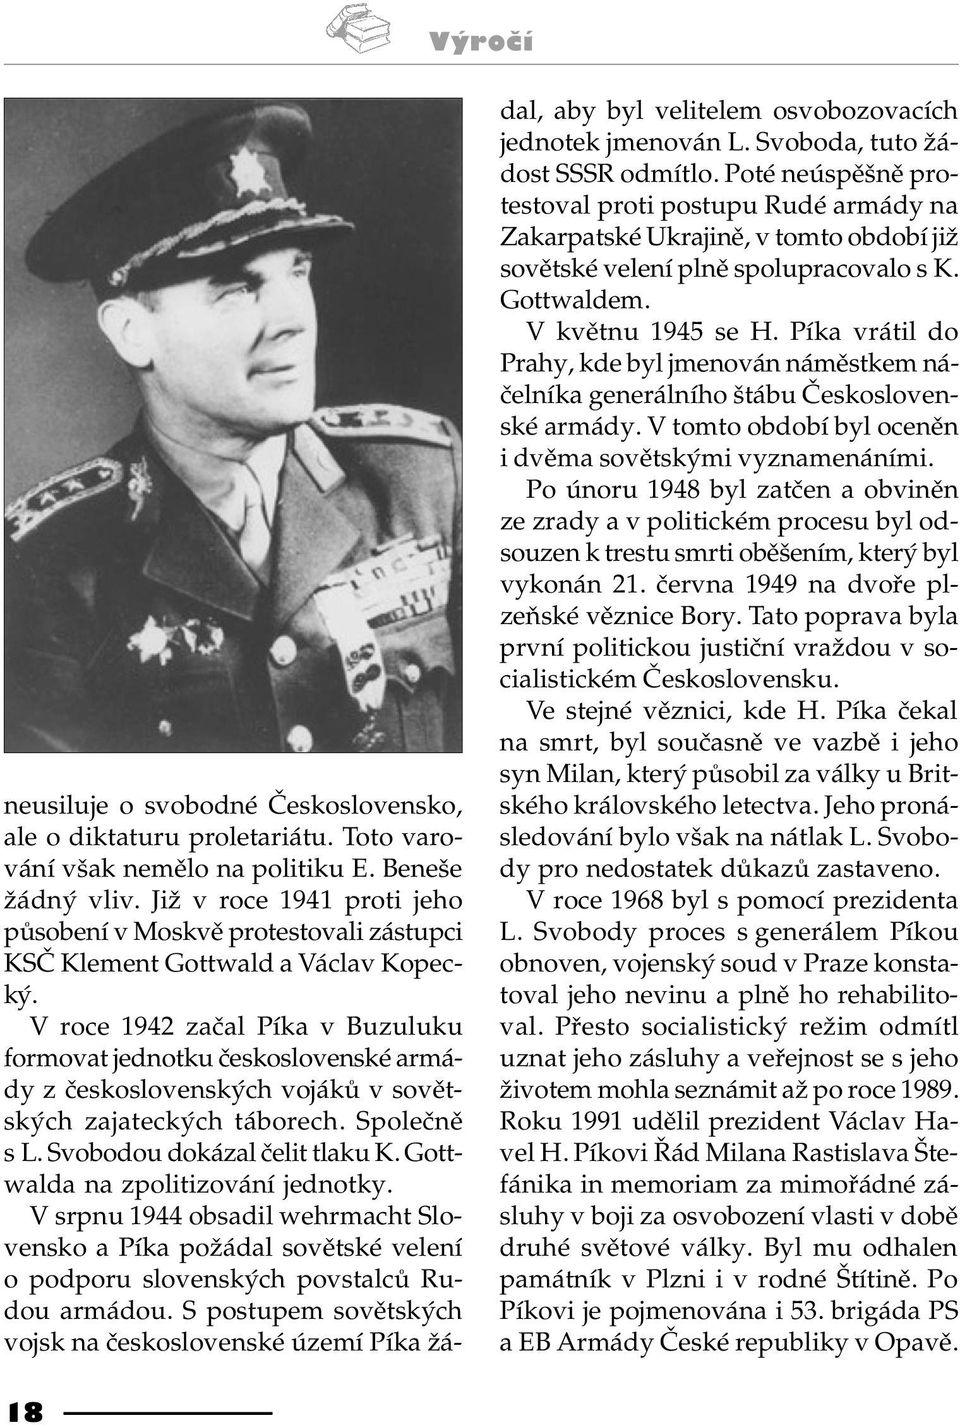 V roce 1942 zaèal Píka v Buzuluku formovat jednotku èeskoslovenské armády z èeskoslovenských vojákù v sovìtských zajateckých táborech. Spoleènì s L. Svobodou dokázal èelit tlaku K.